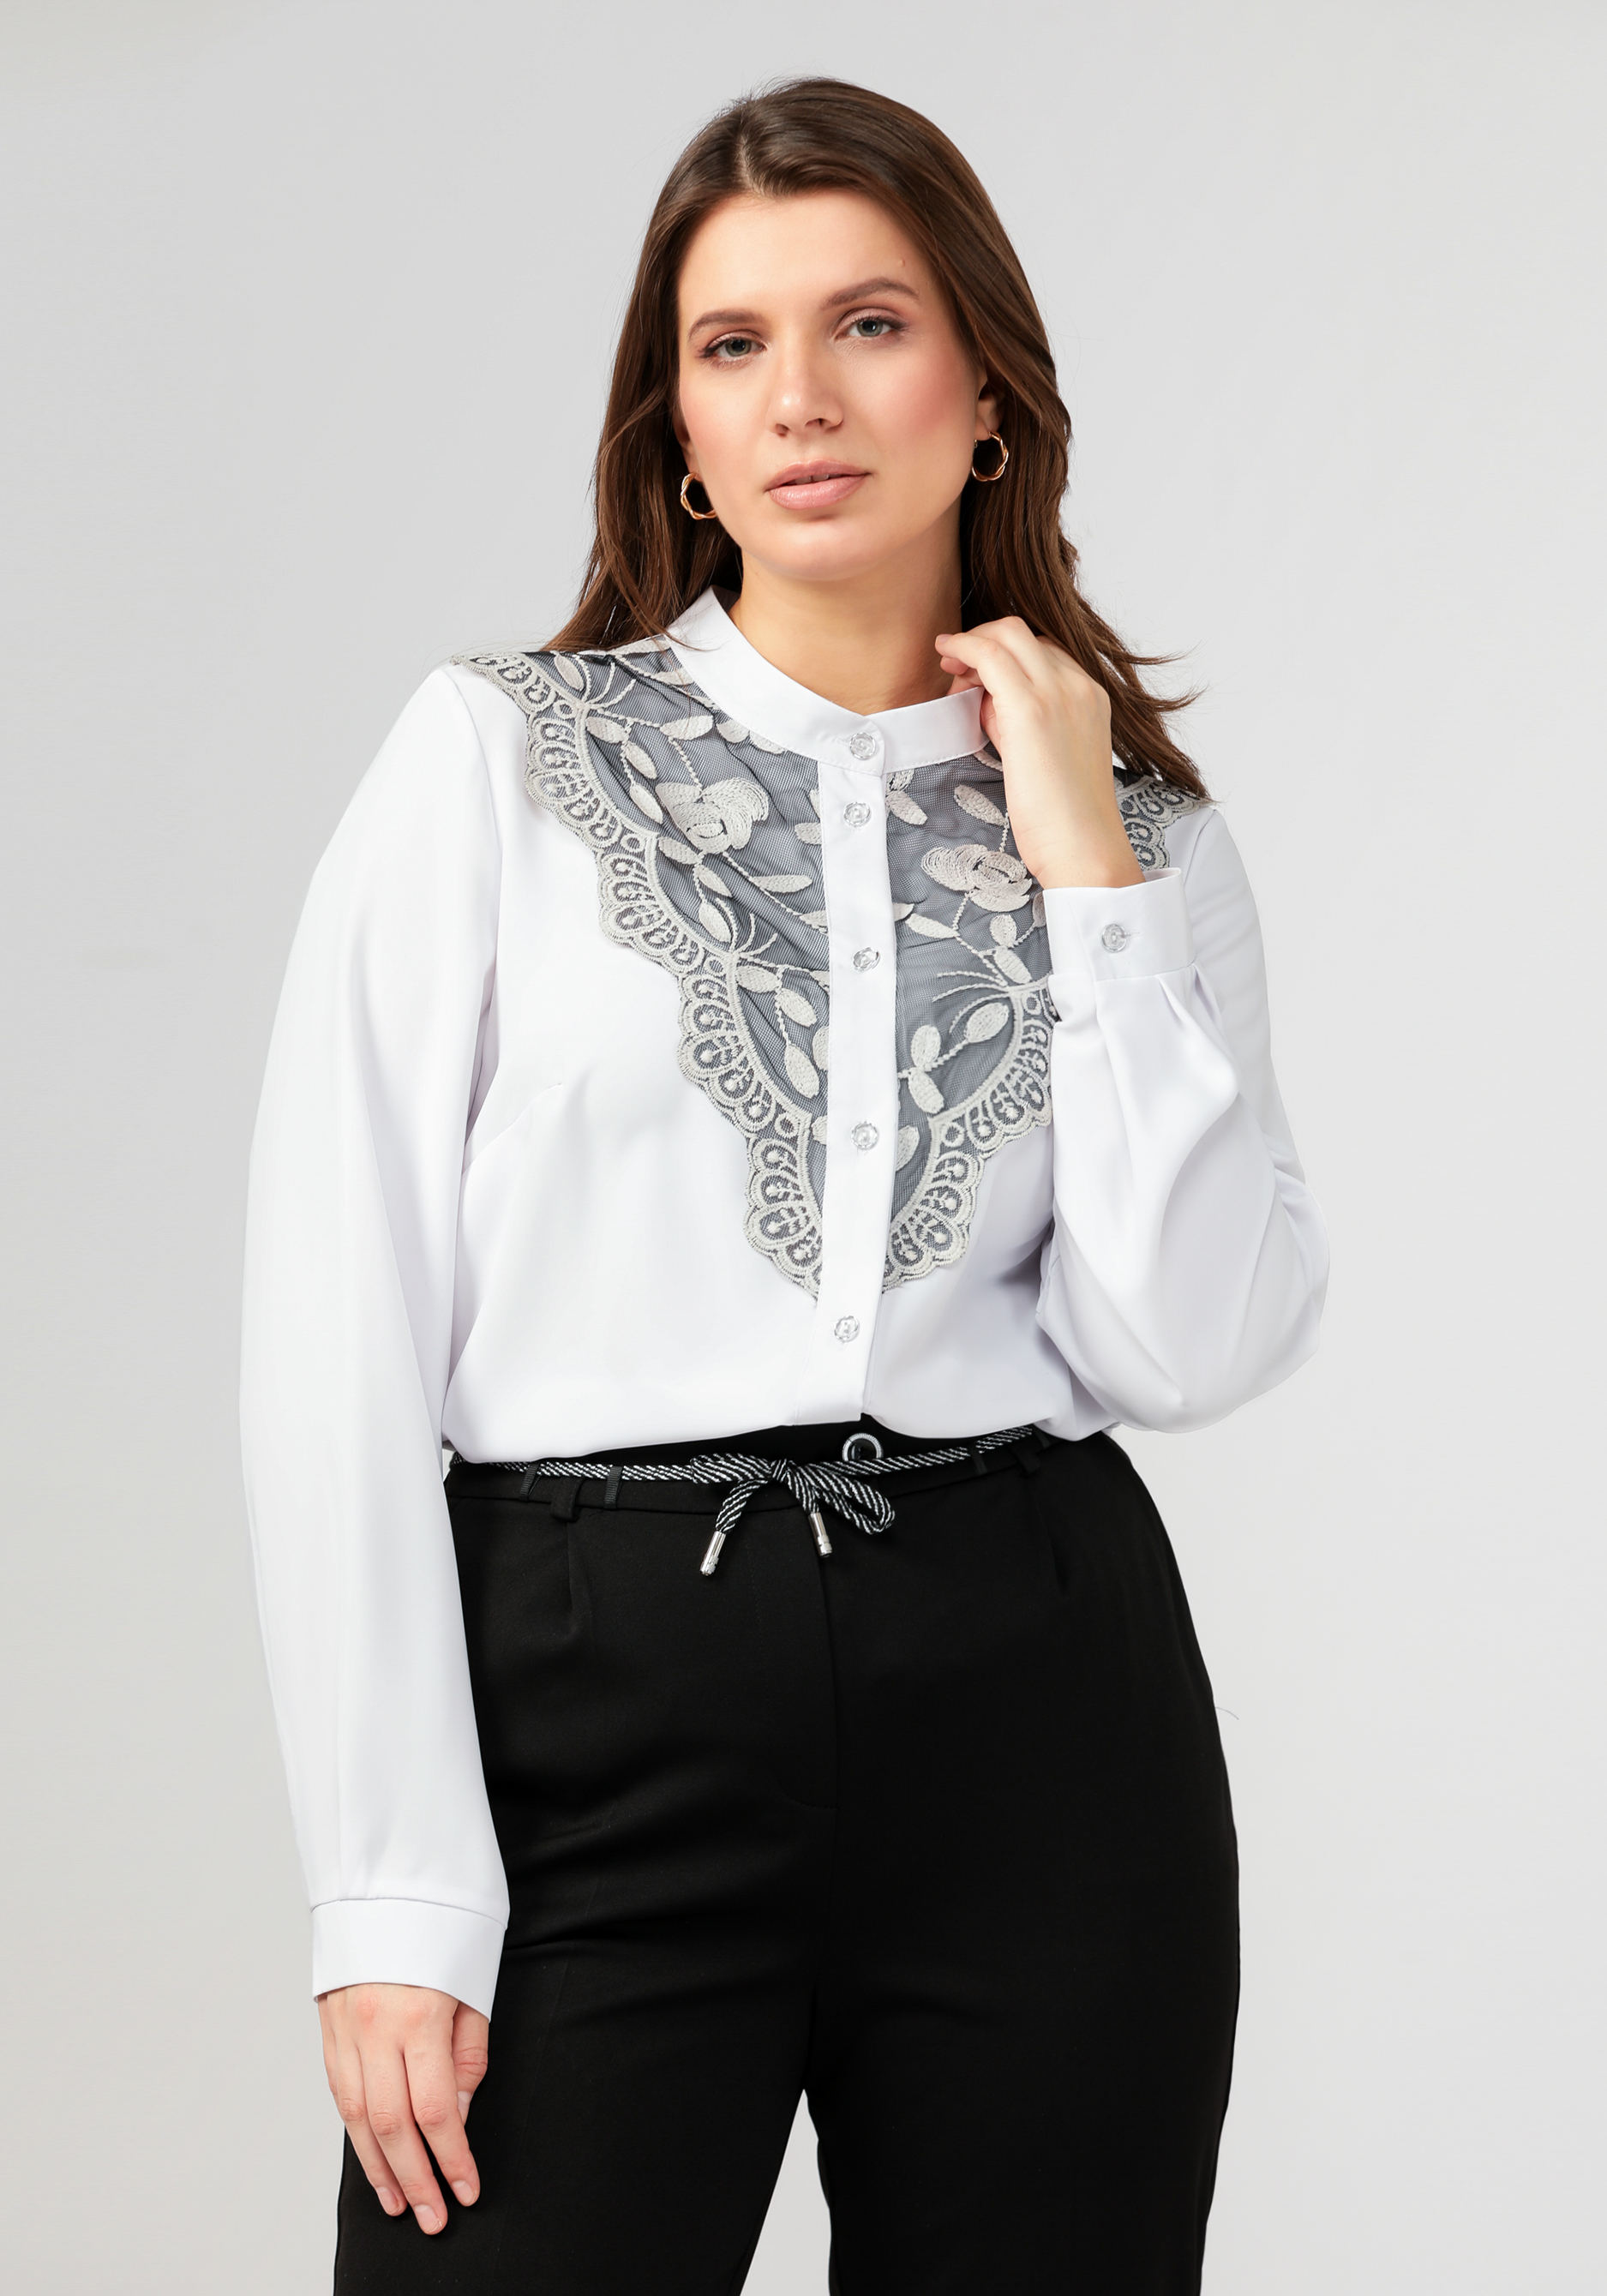 Блуза с кружевной отделкой по центру блуза с коротким рукавом и отделкой на вороте